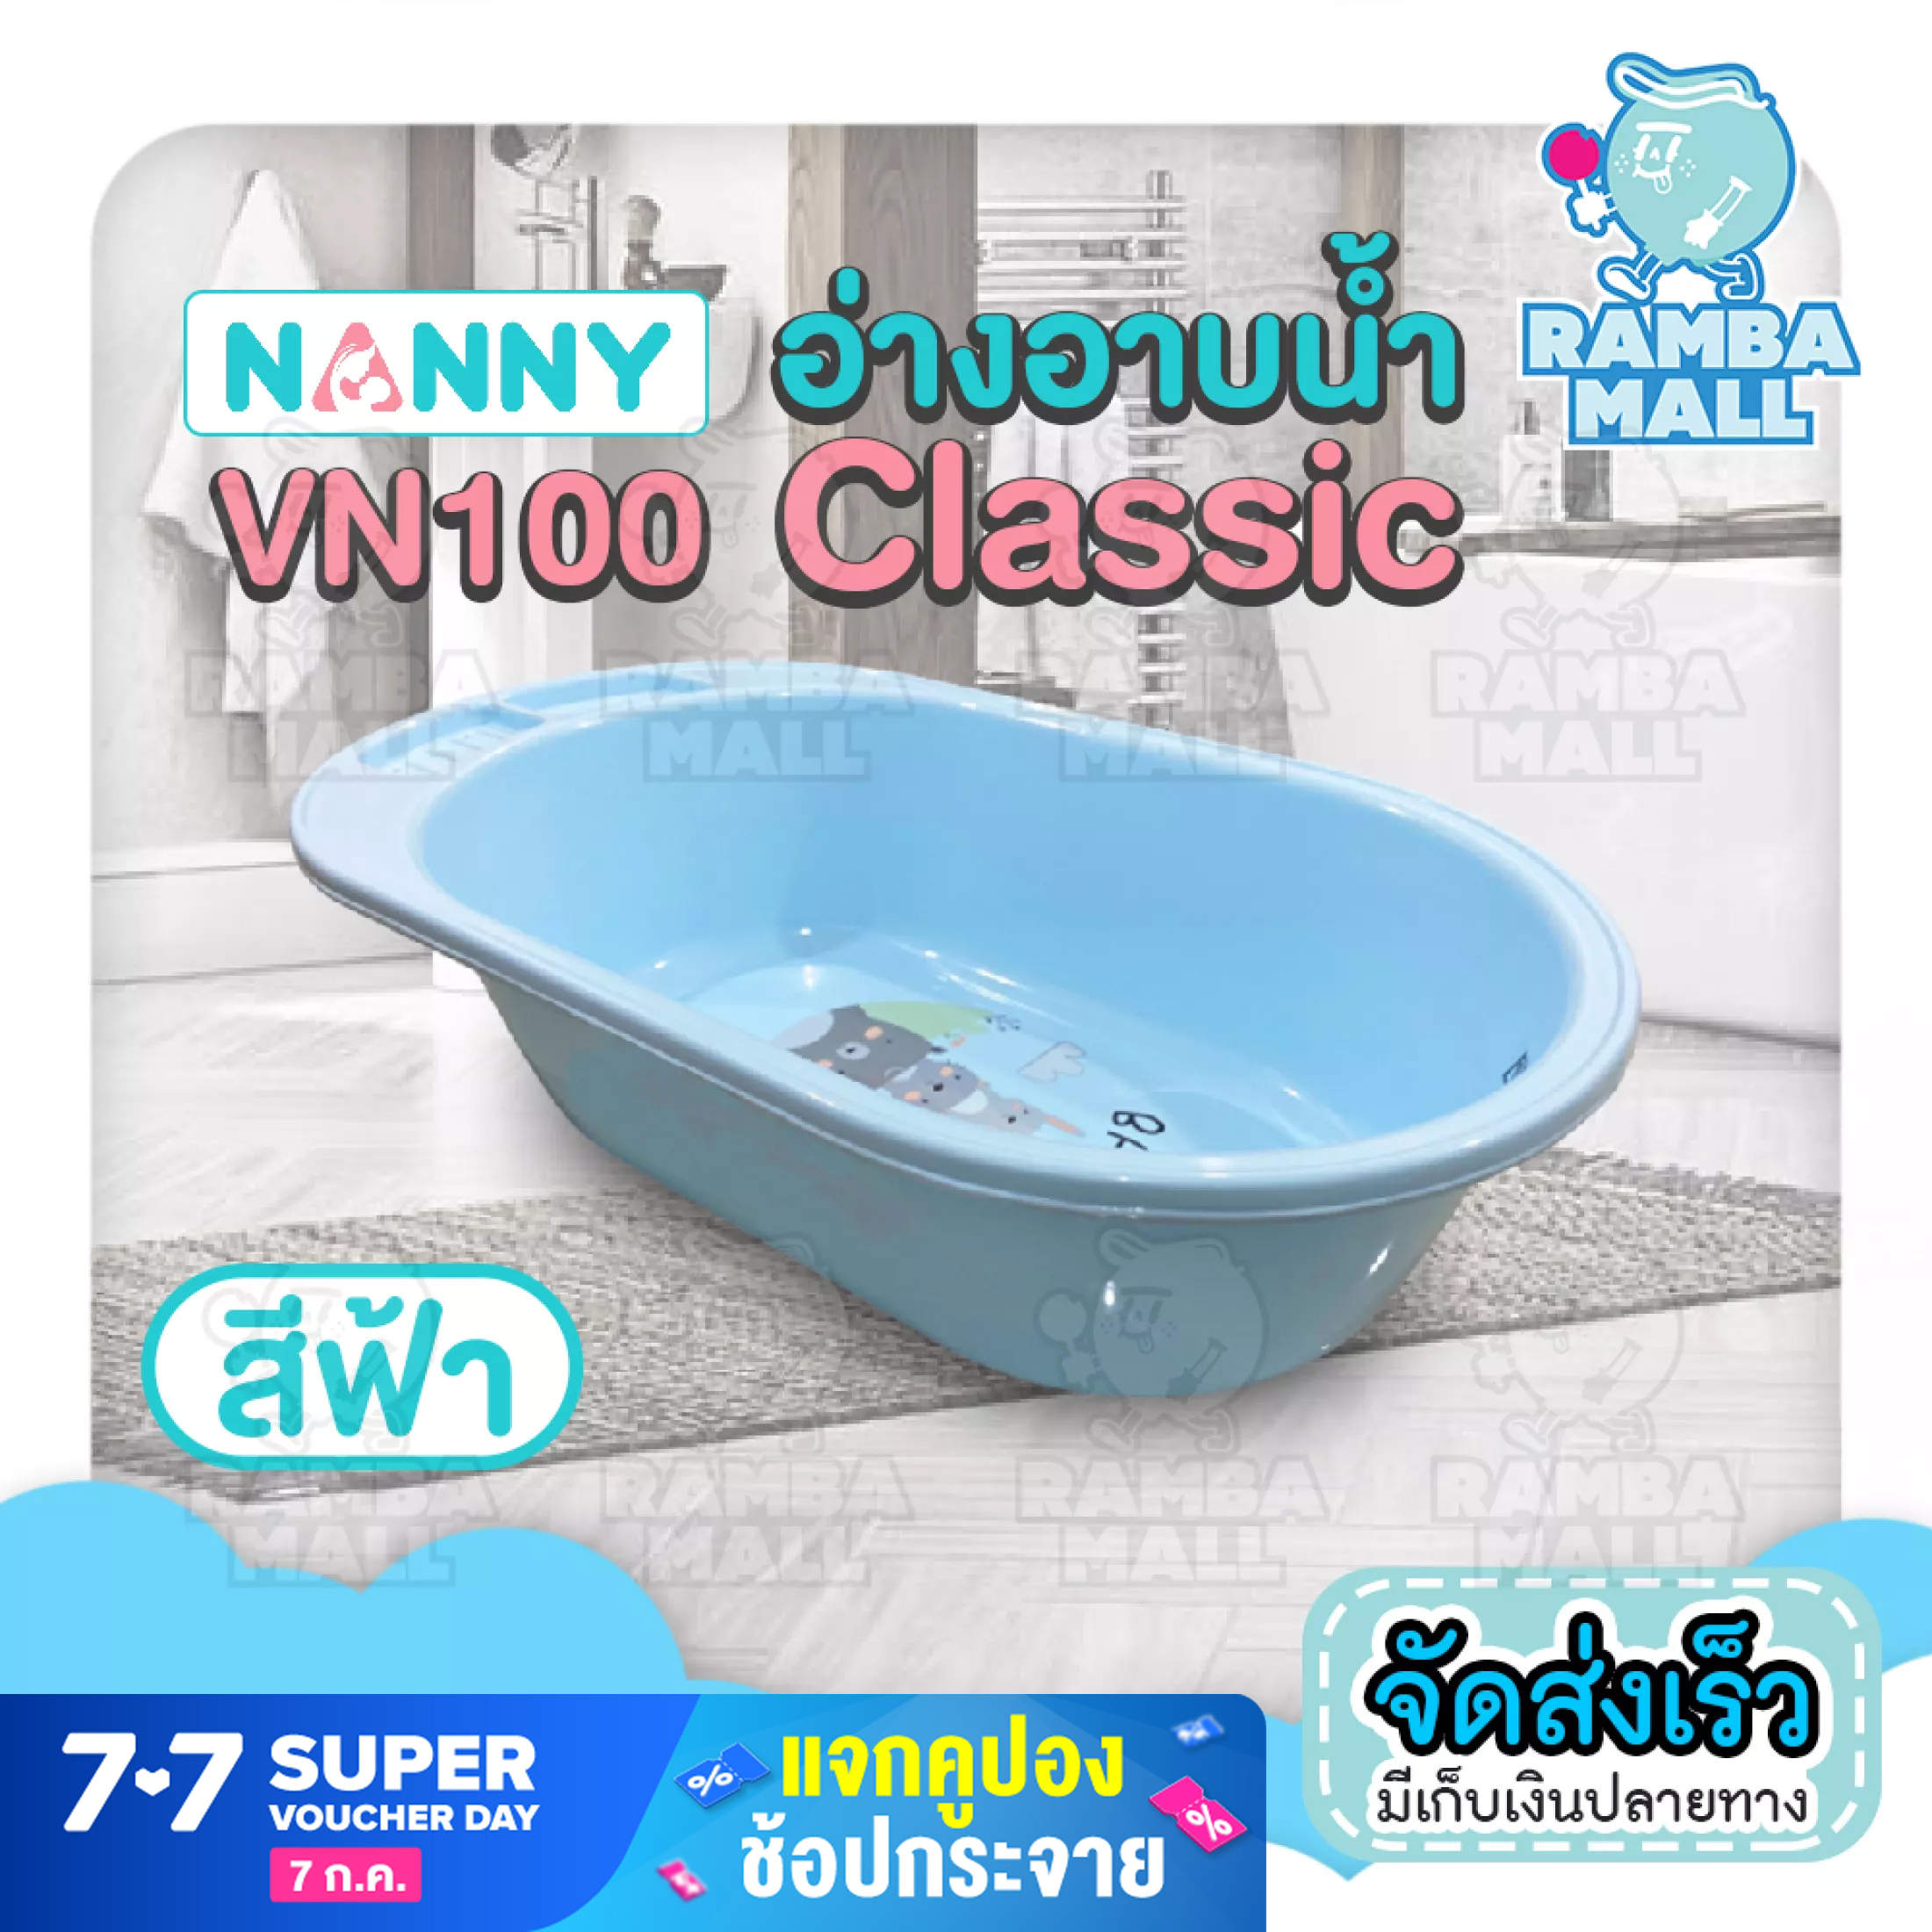 อ่างอาบน้ำเด็ก NANNY อ่างอาบน้ำ Classic (VN100)น้ำหนักเบา เคลื่อนย้ายสะดวก ทำจากพลาสติกคุณภาพดี